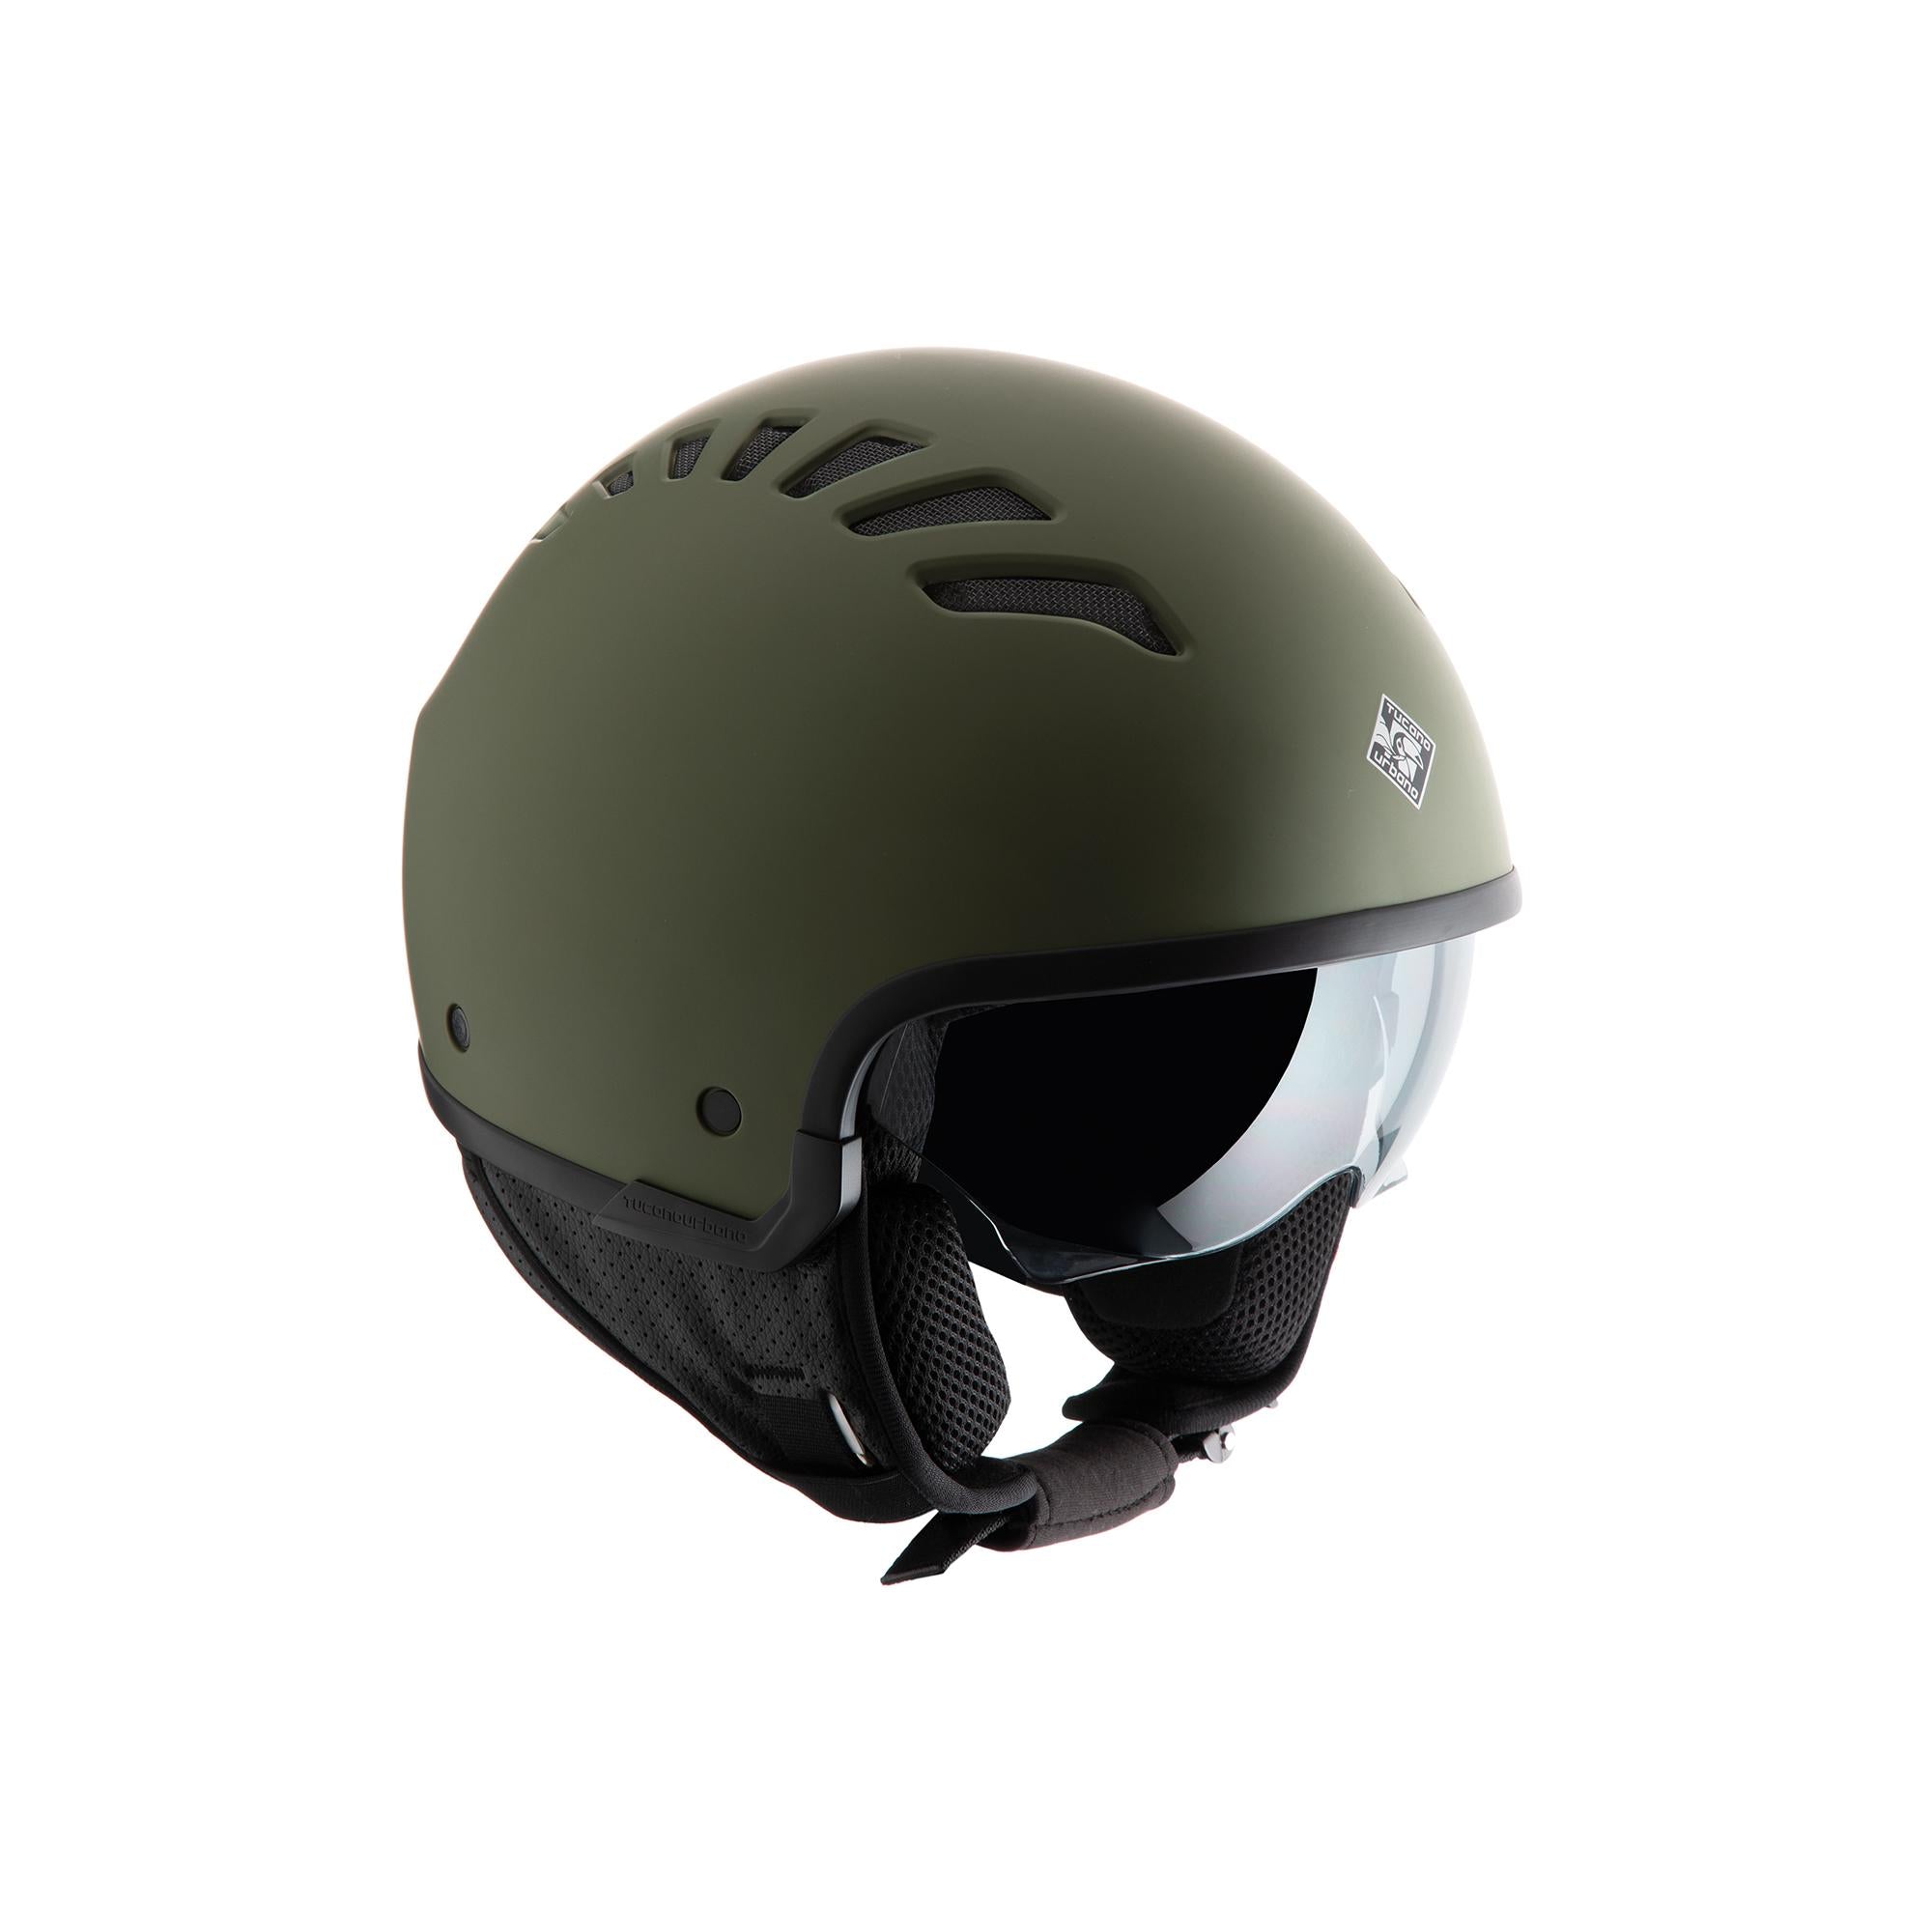 TUCANO URBANO EL'FLESH matt airbone green helmet - 0